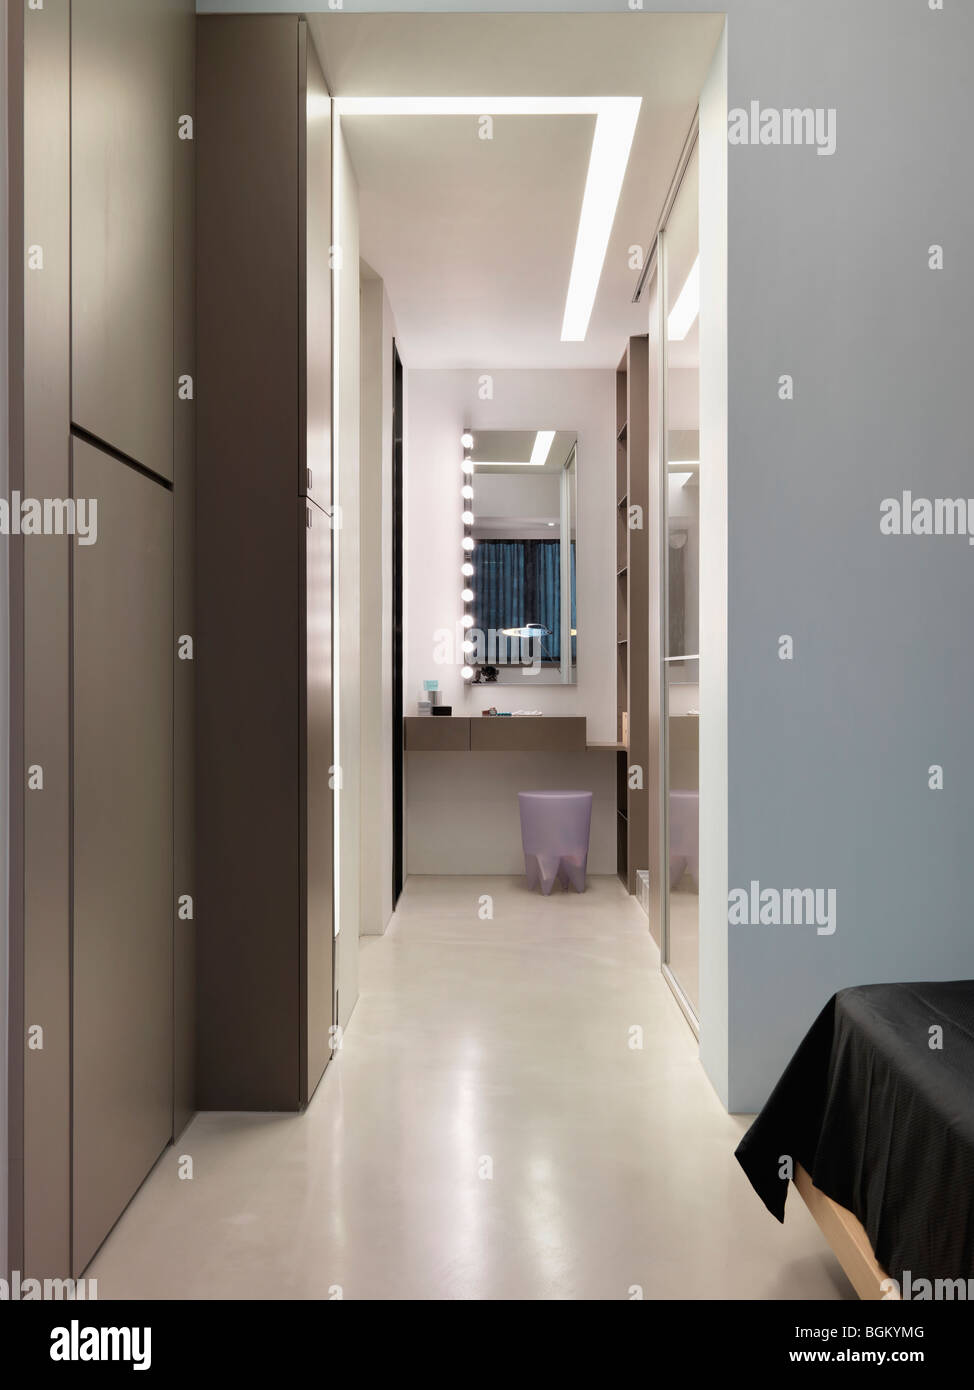 Couloir de la vanité dans modern home Banque D'Images